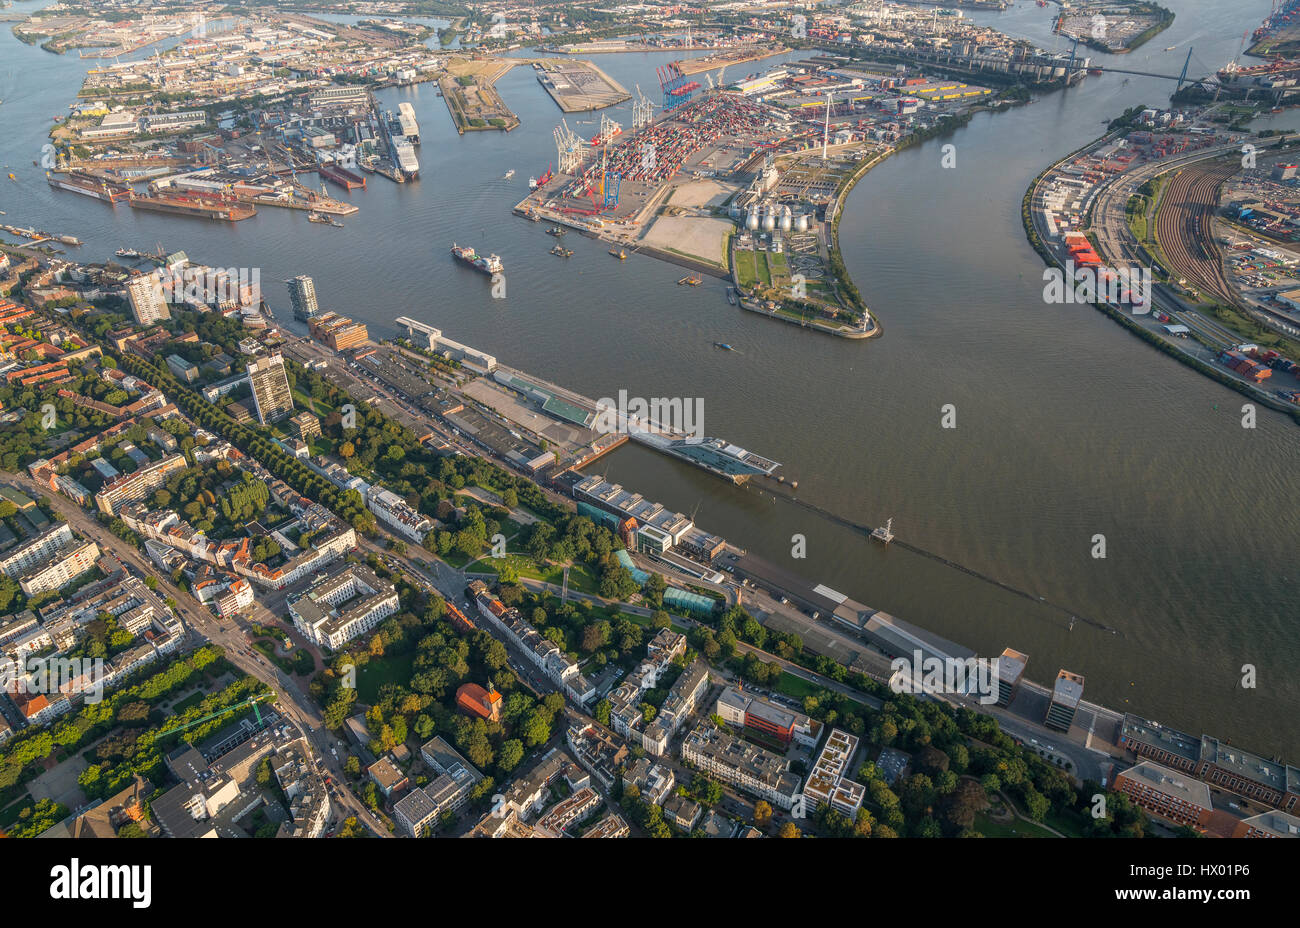 Germania, Amburgo, vista aerea di Mitte Norderelbe, Dockland, Hamburg Cruise Center Altona, Container Terminal Tollerort Foto Stock